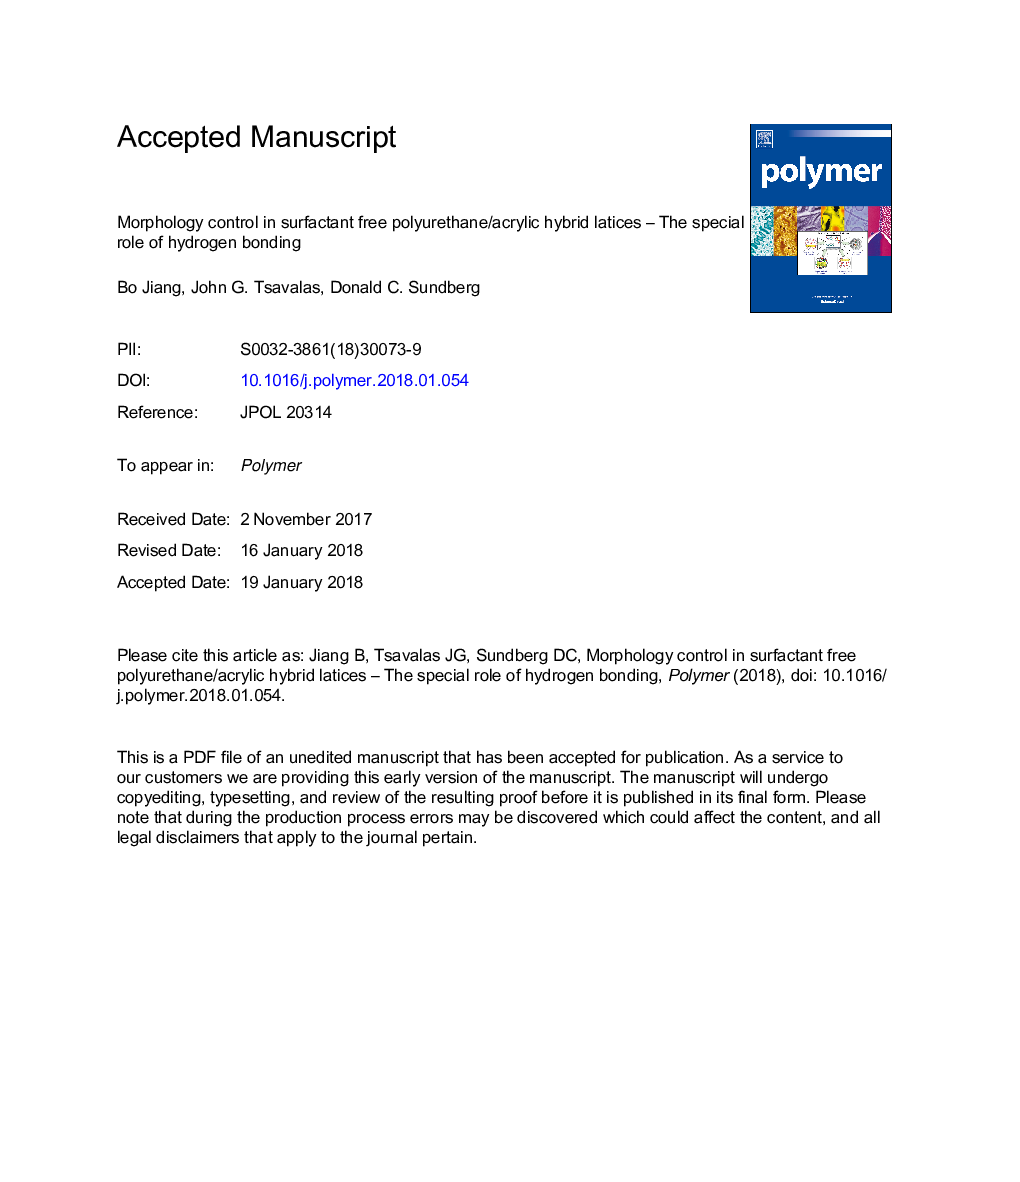 کنترل مورفولوژی در لاکتات هیبرید پلی یورتان / اکریلیک بدون سورفاکتانت - نقش ویژه ی پیوند هیدروژنی 